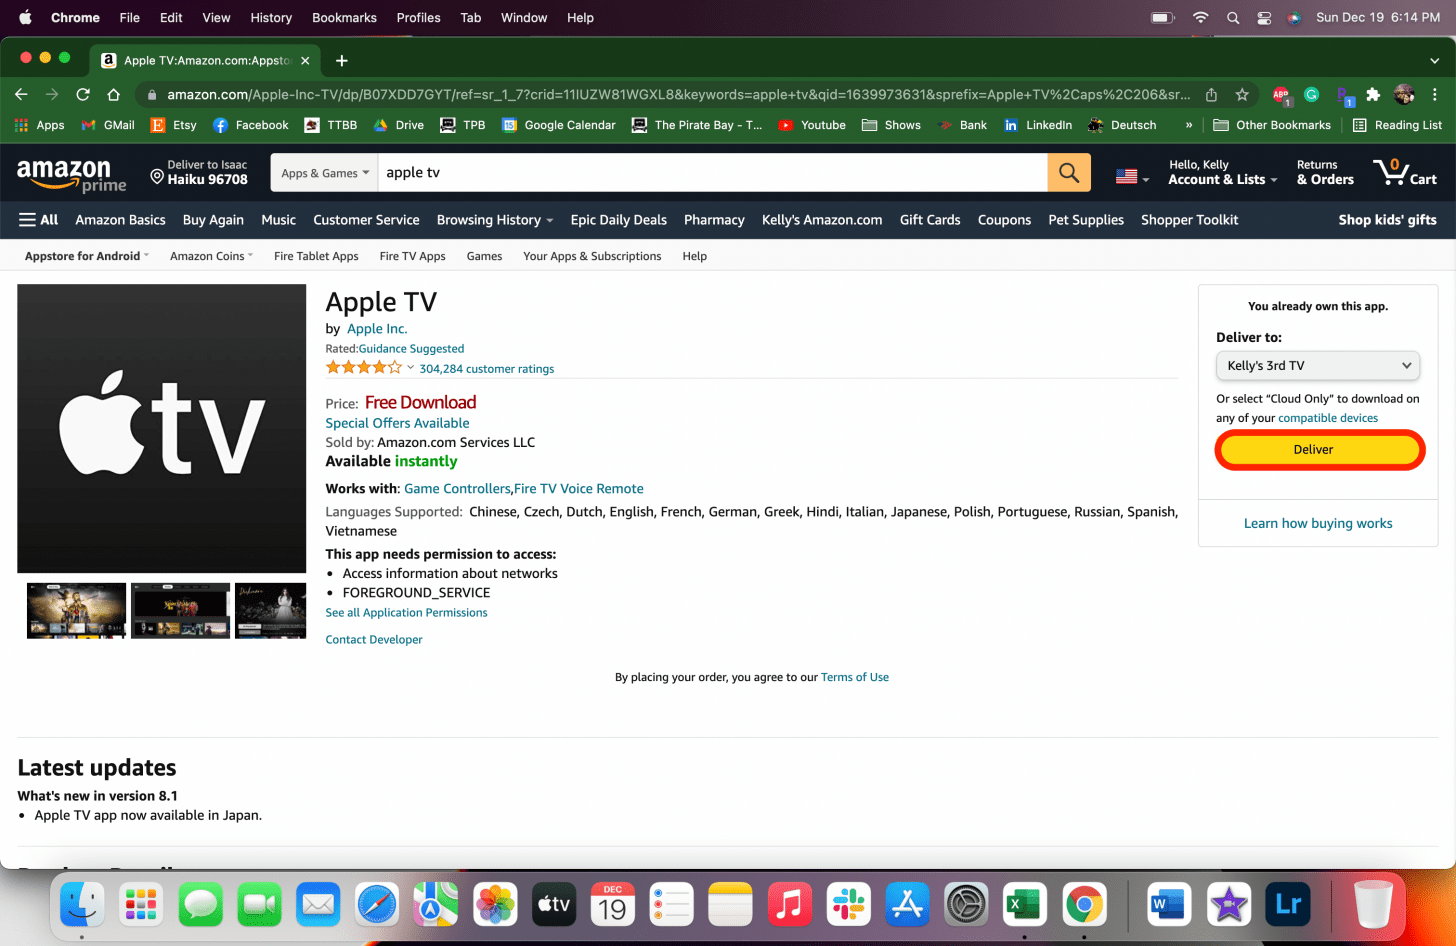 Klicken Sie auf Get App oder Deliver – kann ich Apple TV auf Firestick bekommen, hat Firestick Apple TV